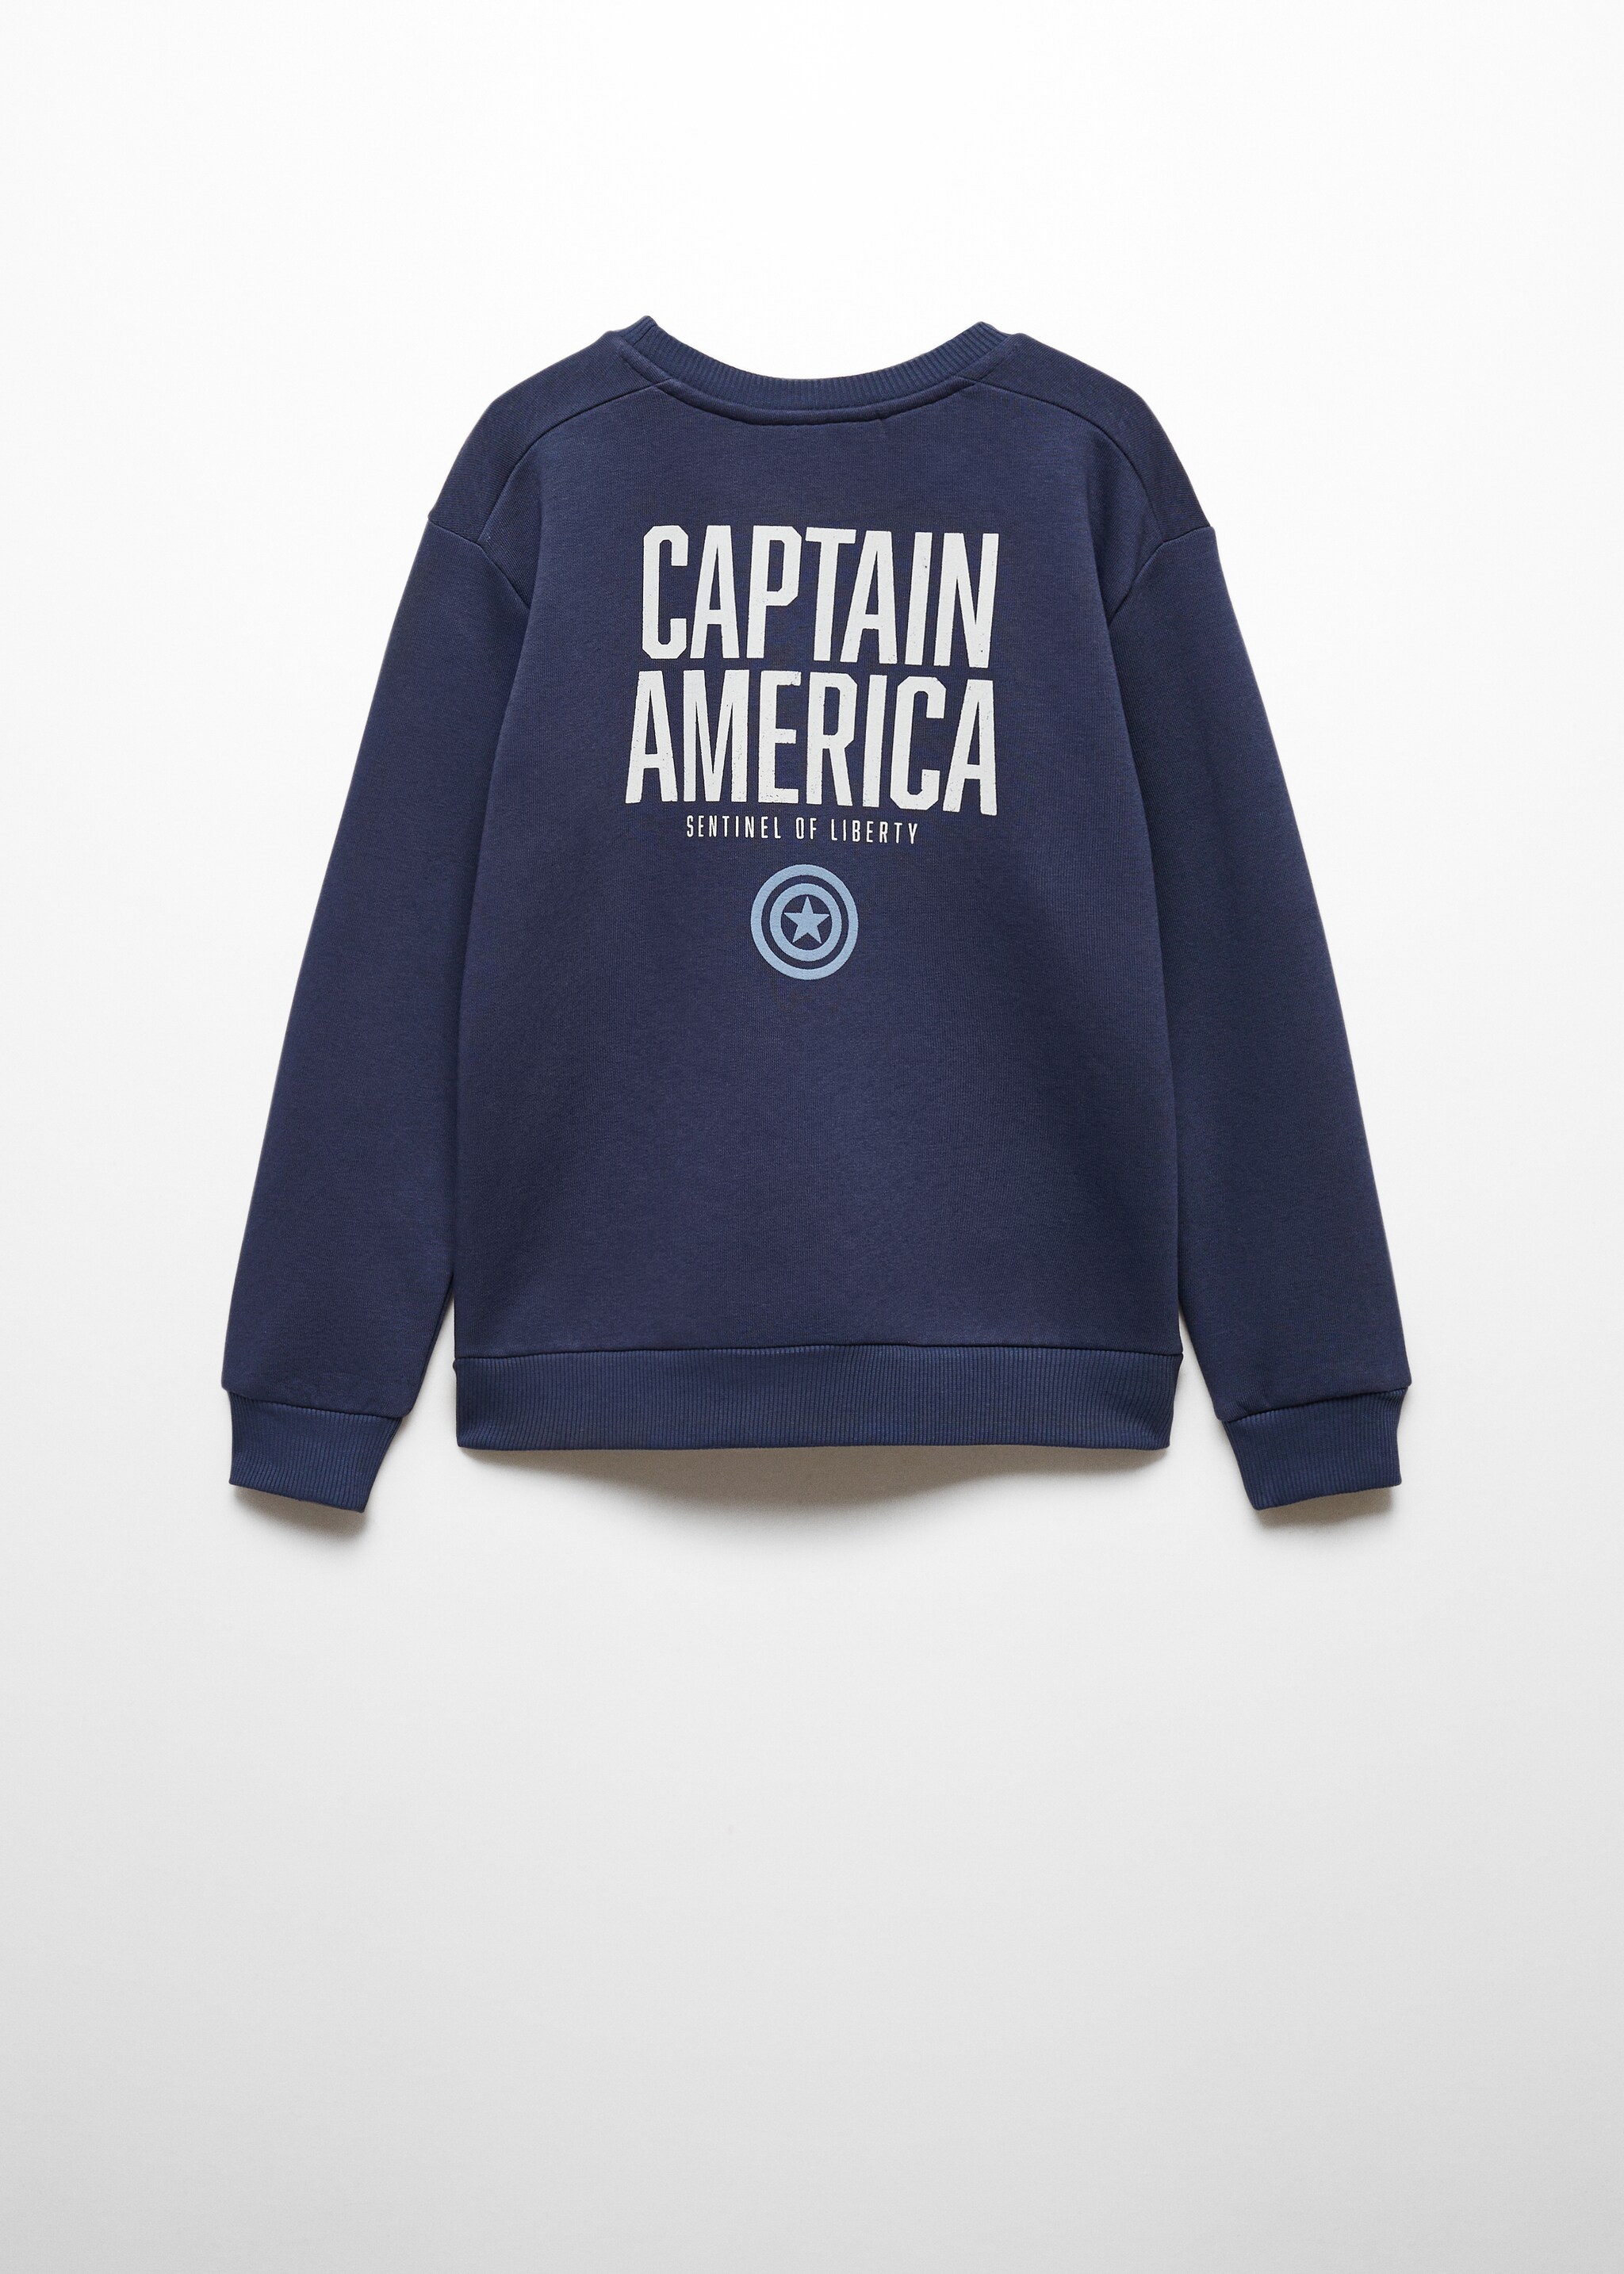 Sweatshirt do Capitão América - Verso do artigo